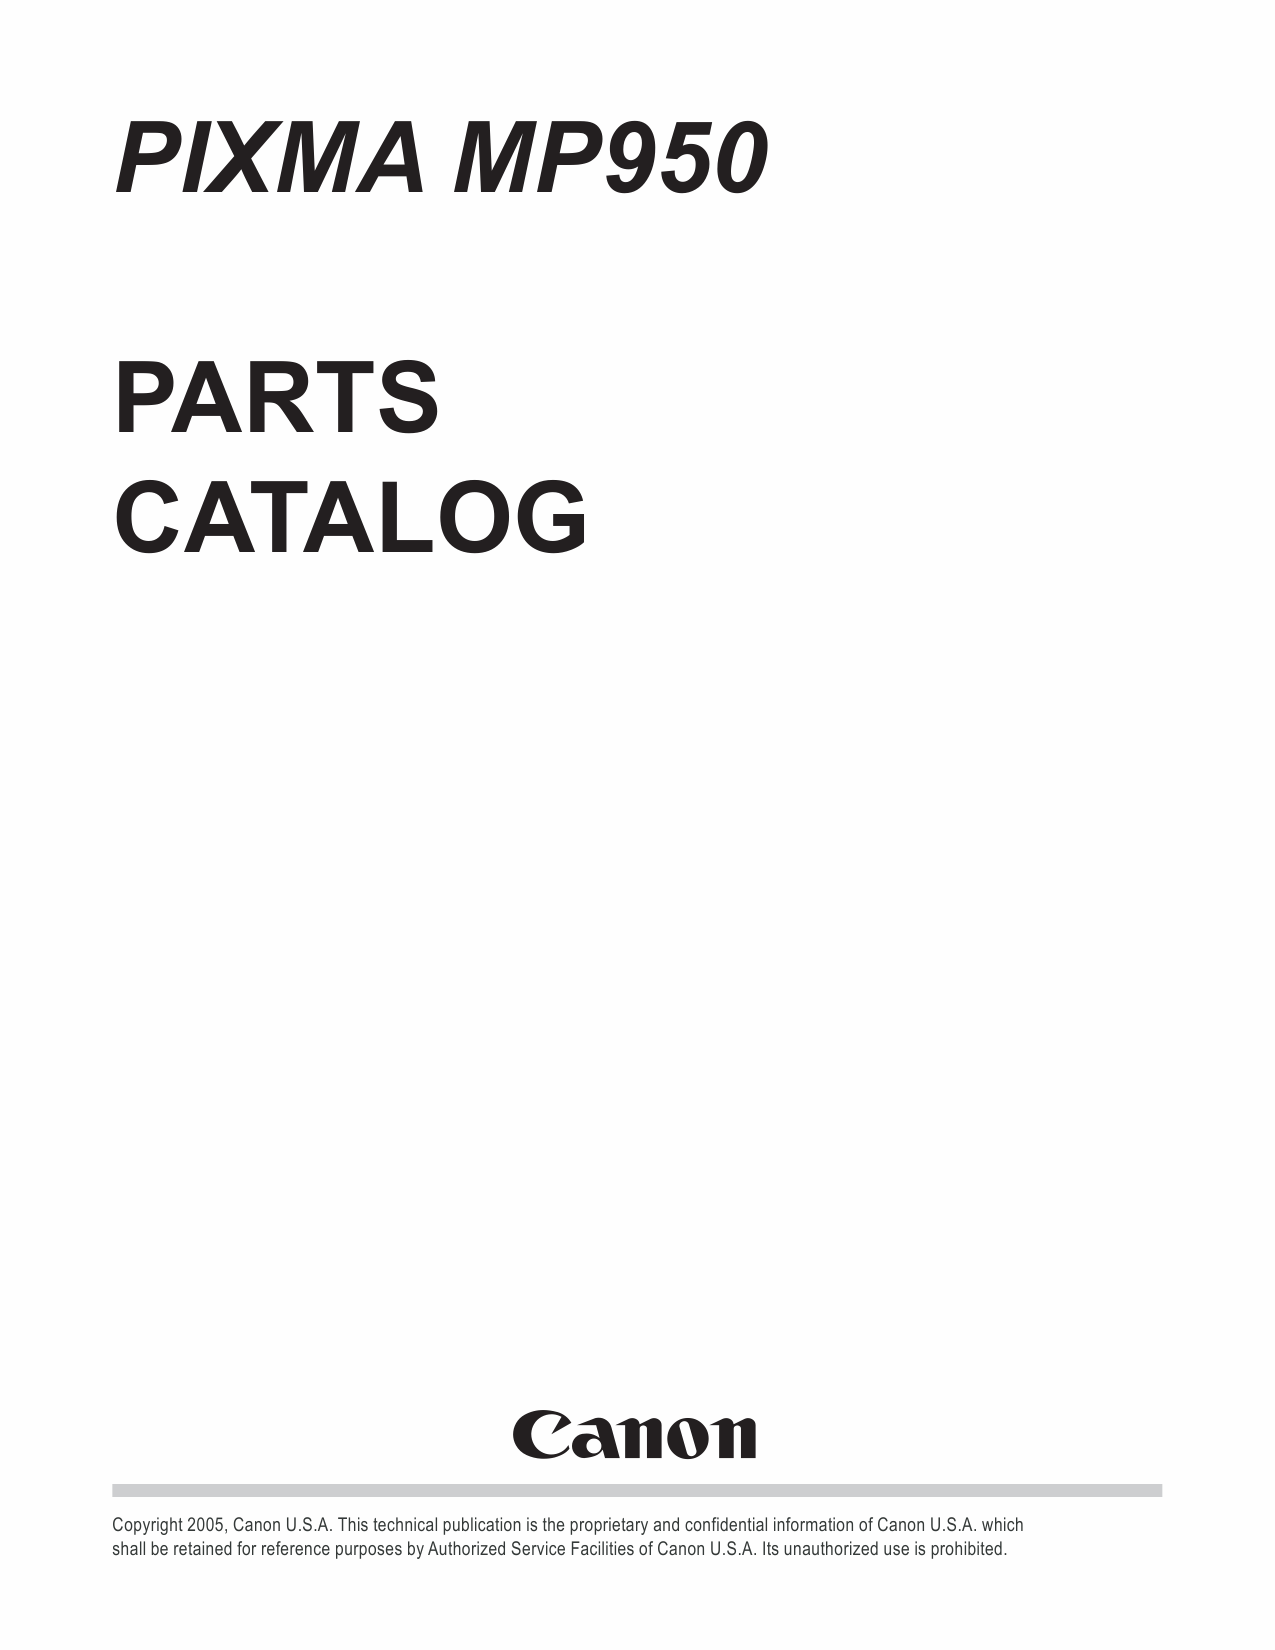 Canon PIXMA MP950 Parts Catalog-1